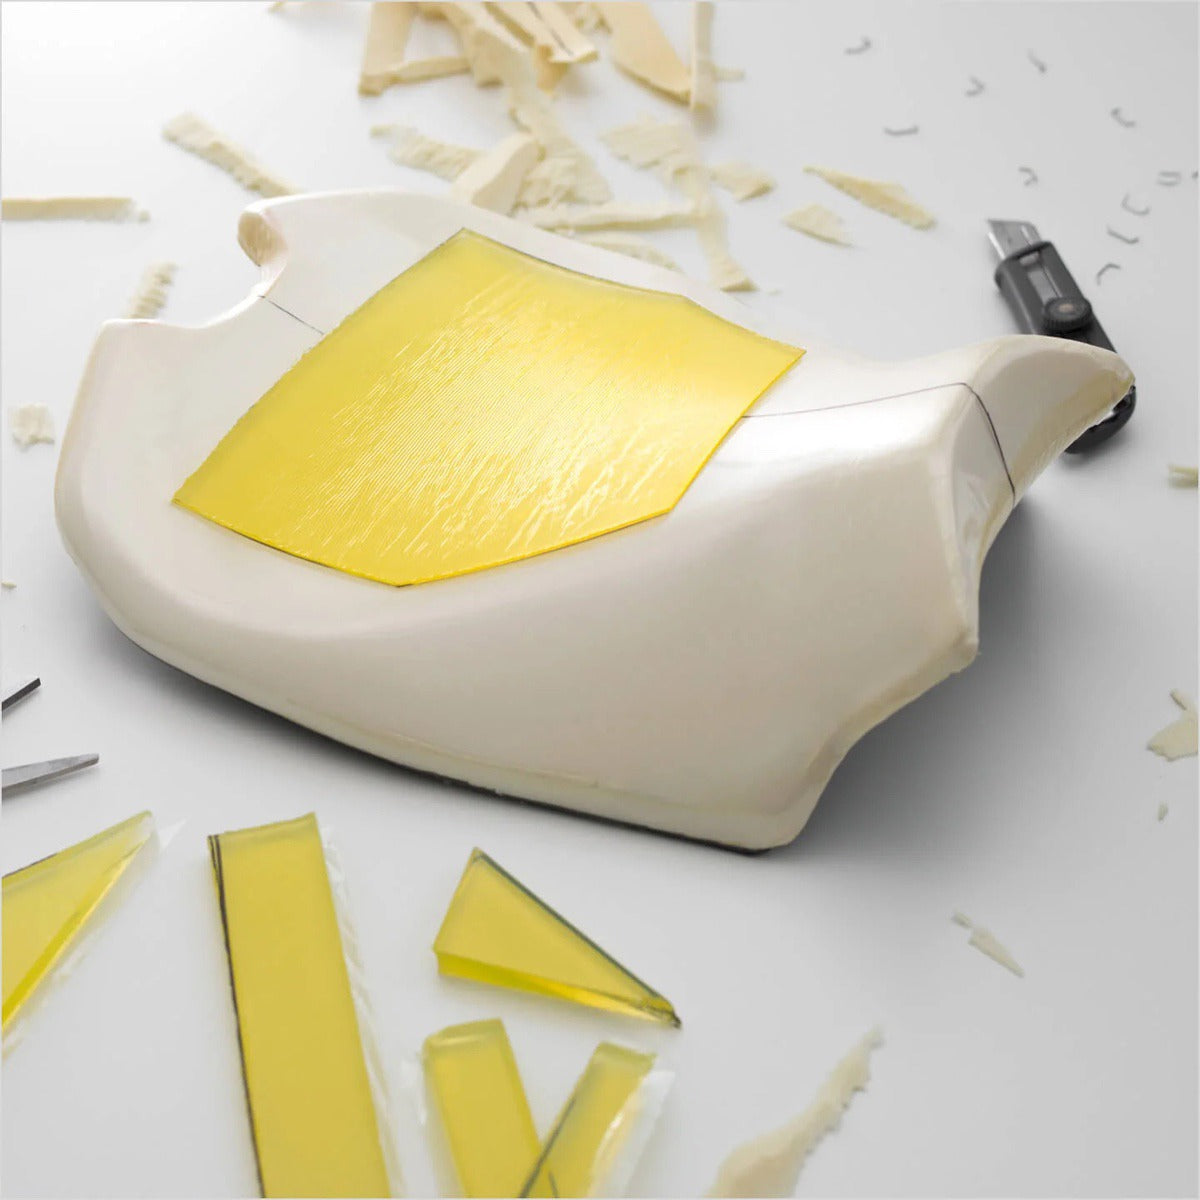 Luimoto gold gel inserts in motorcycle seat foam